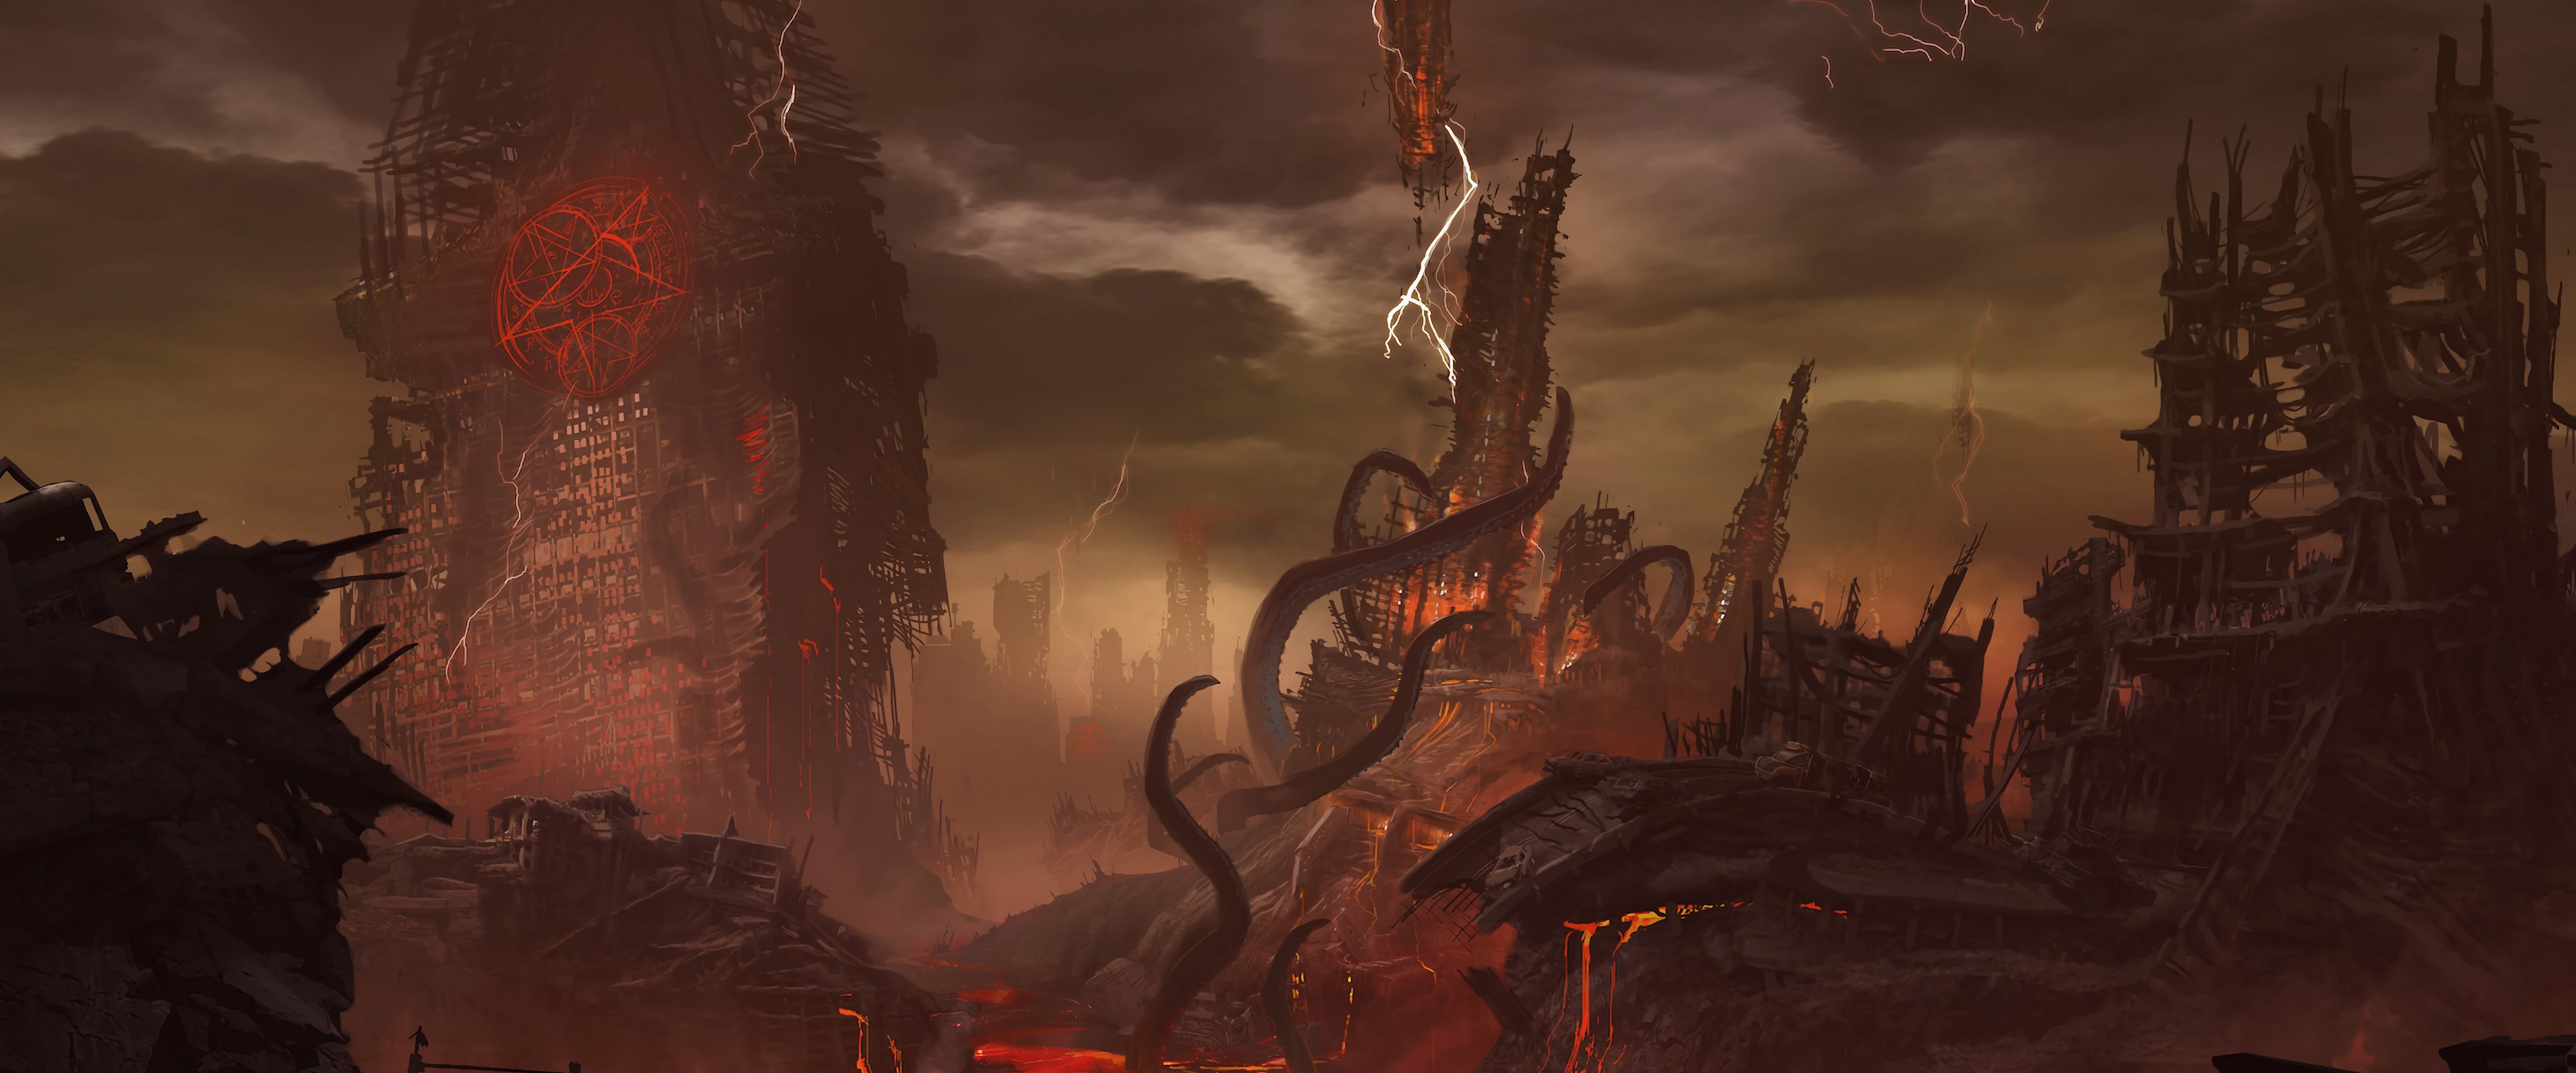 Doom Eternal 4K Wallpapers